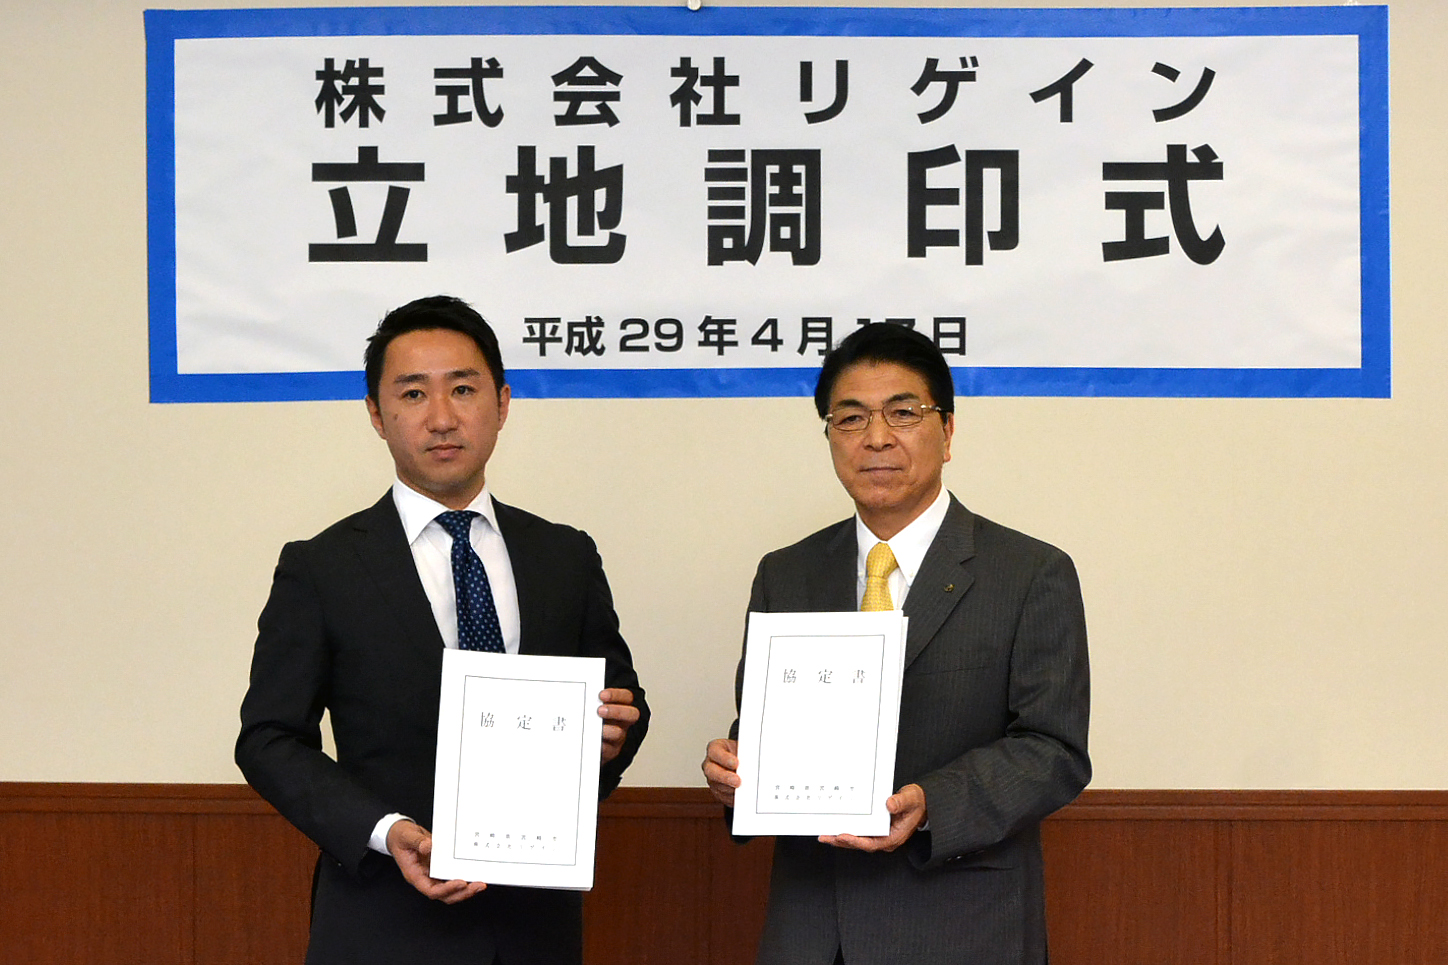 リゲインは宮崎市に新しい働き方宮崎マーケティングセンターの立地協定を締結